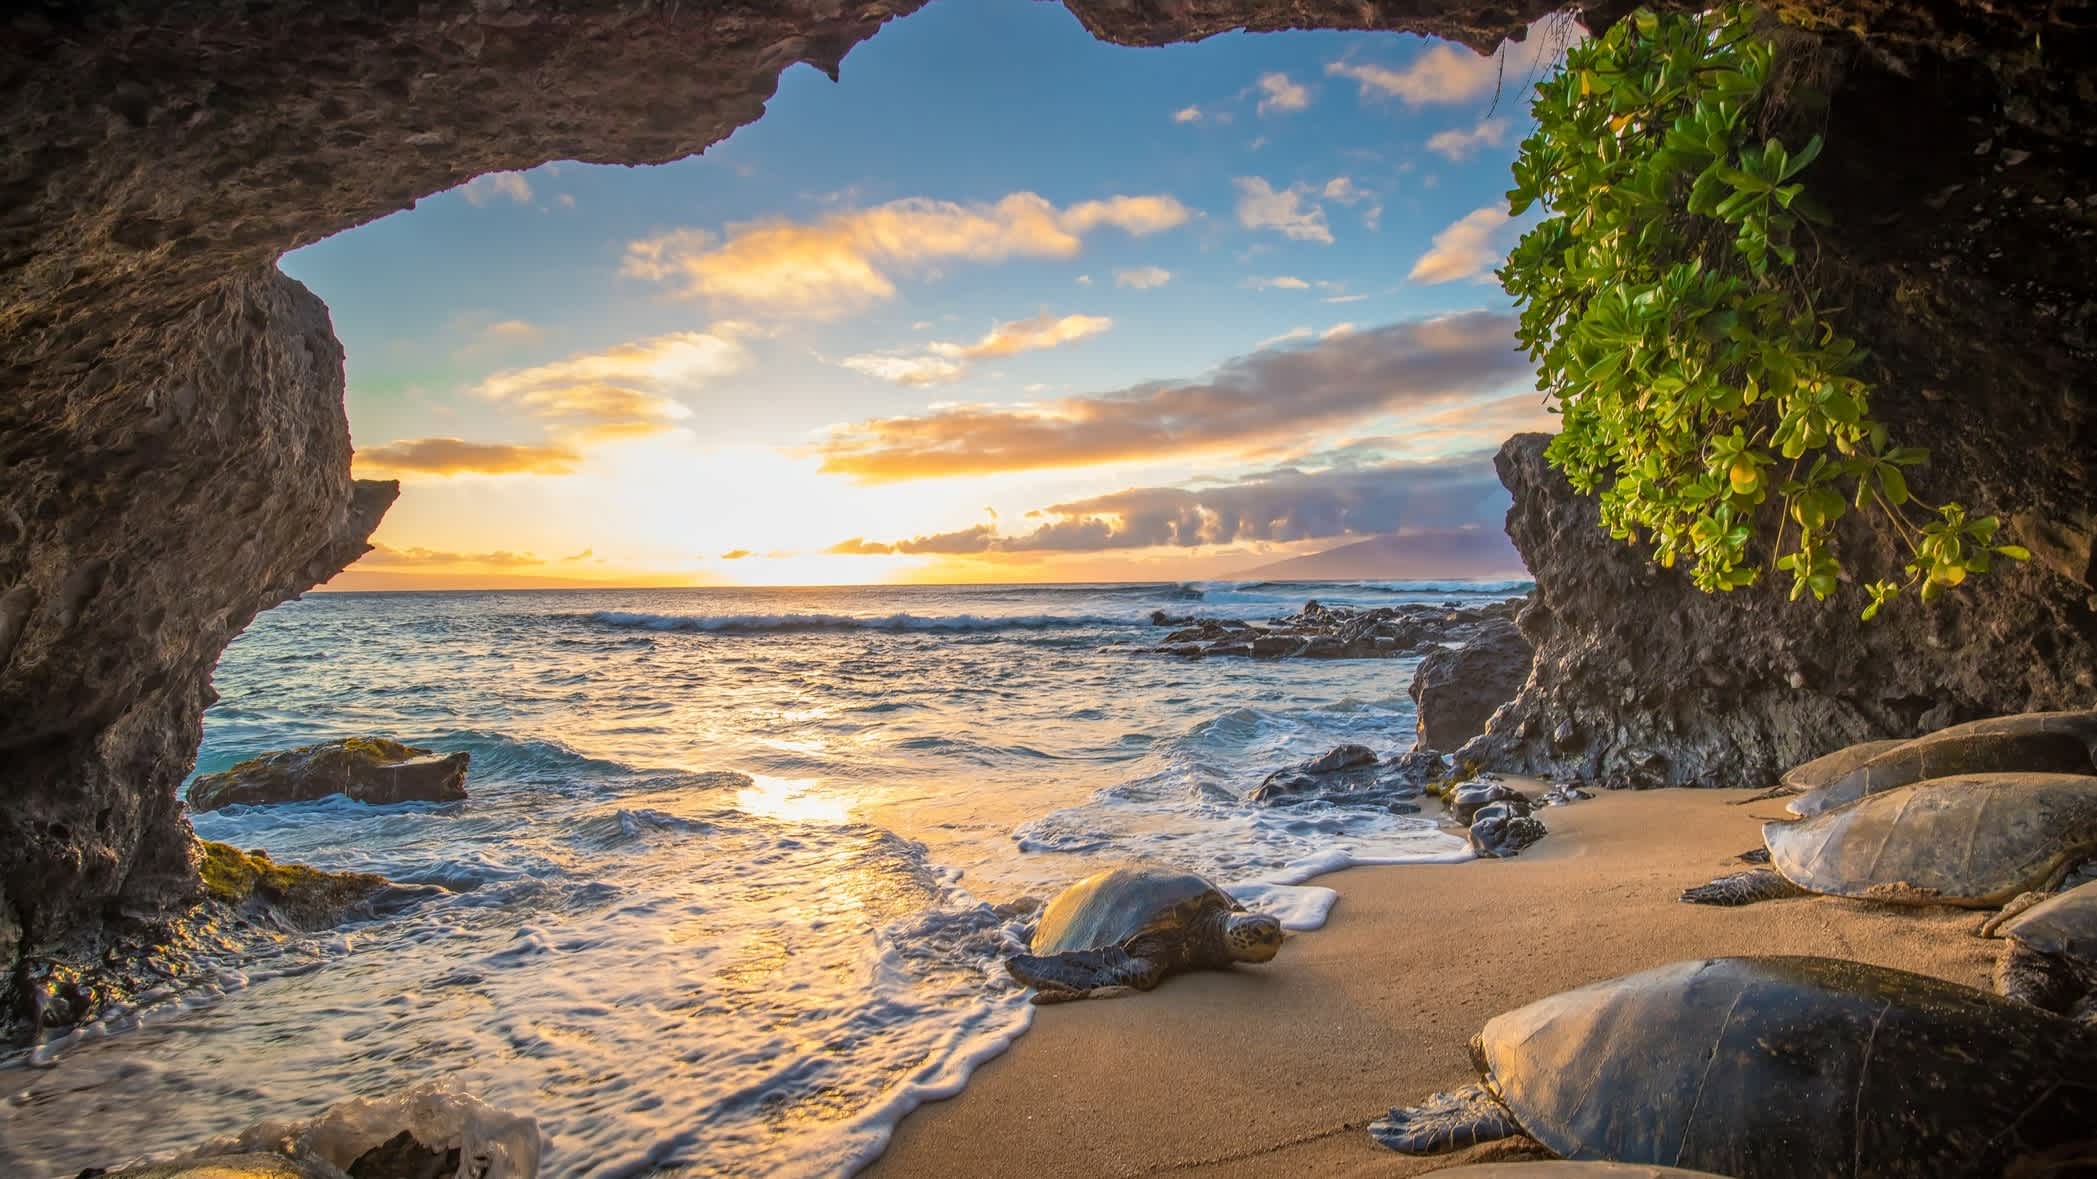 Schildkröte in einer Höhle auf Maui, Hawaii, USA. 

